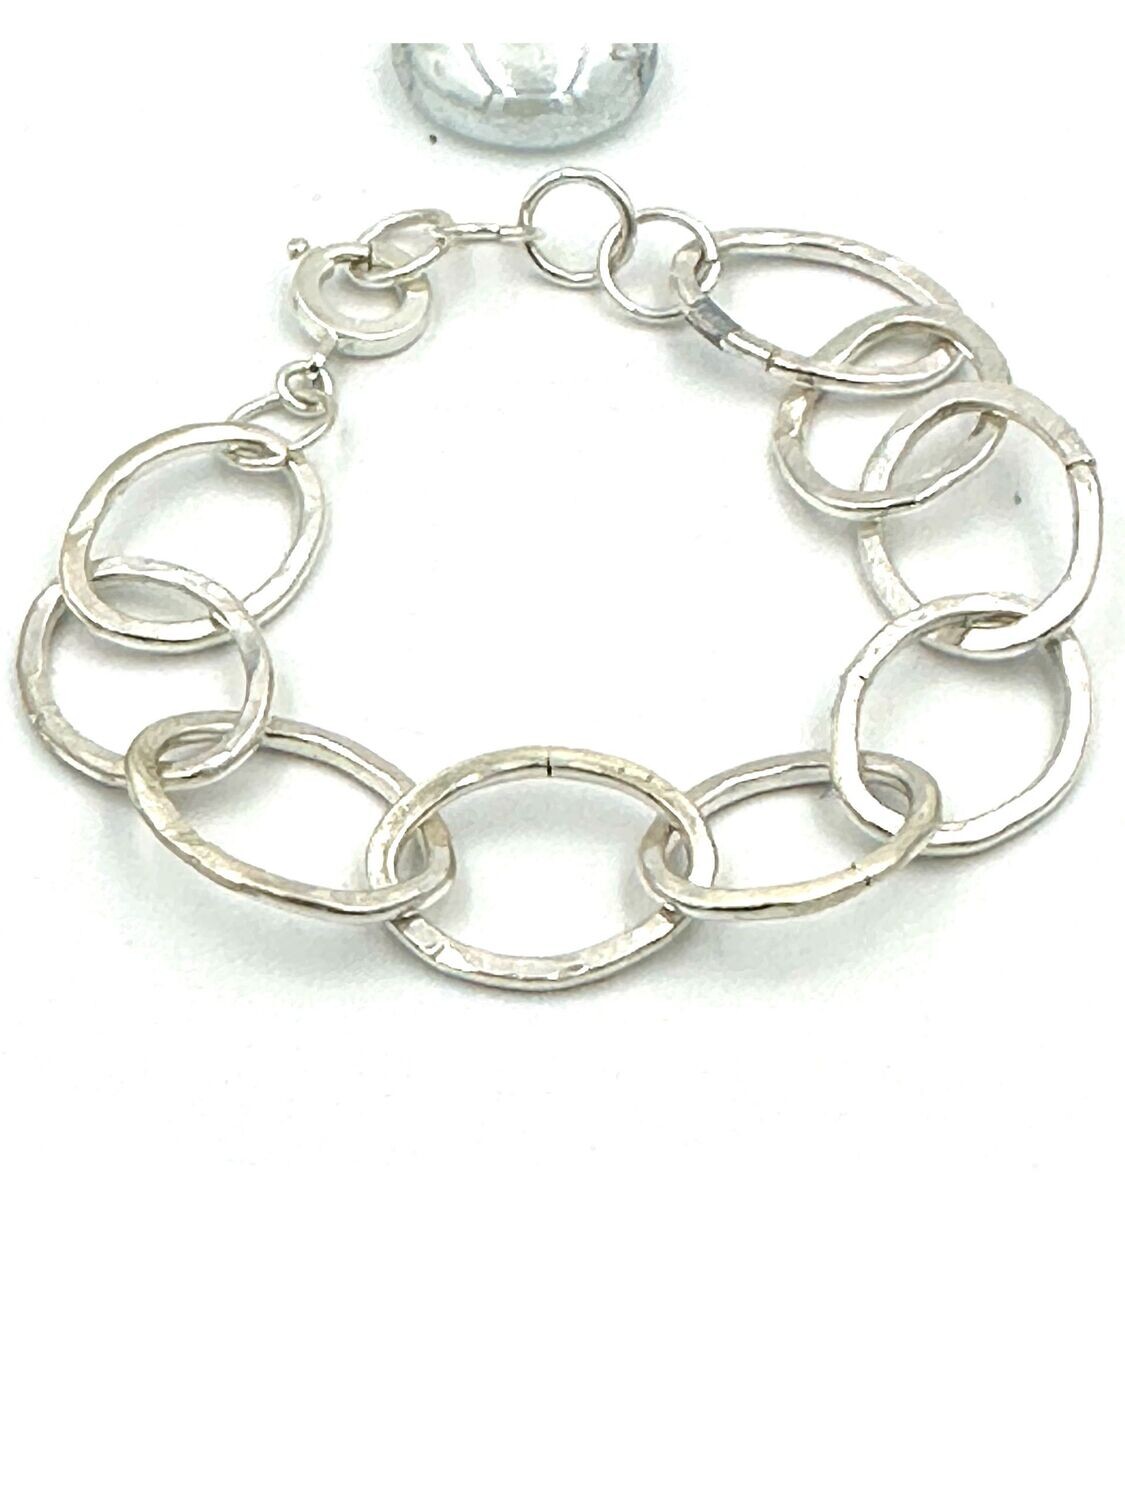 Silver interlinked hammered bracelet